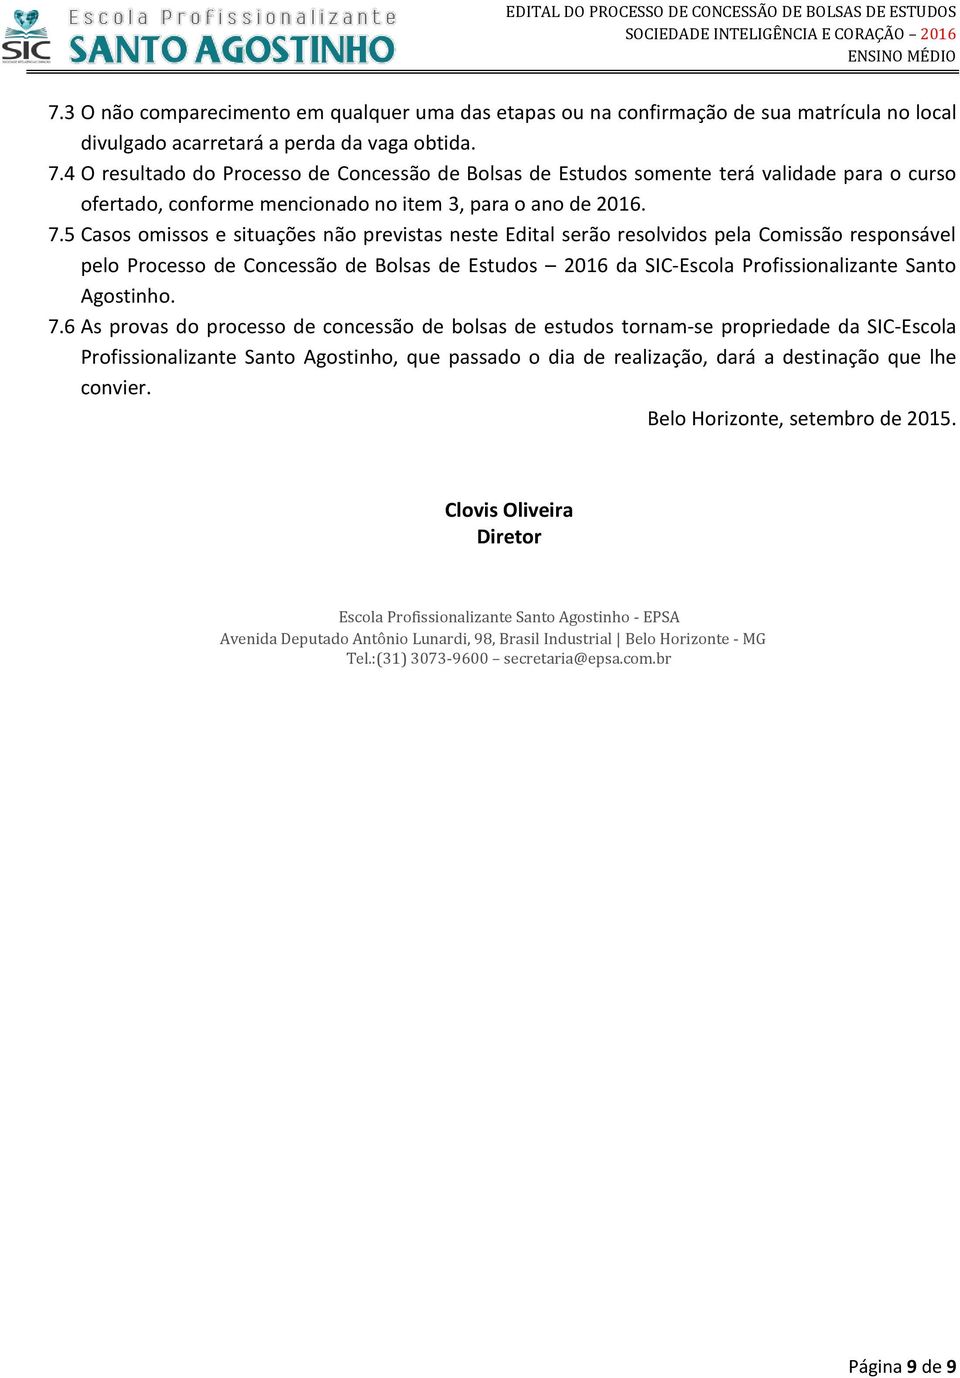 5 Casos omissos e situações não previstas neste Edital serão resolvidos pela Comissão responsável pelo Processo de Concessão de Bolsas de Estudos 2016 da SIC-Escola Profissionalizante Santo Agostinho.